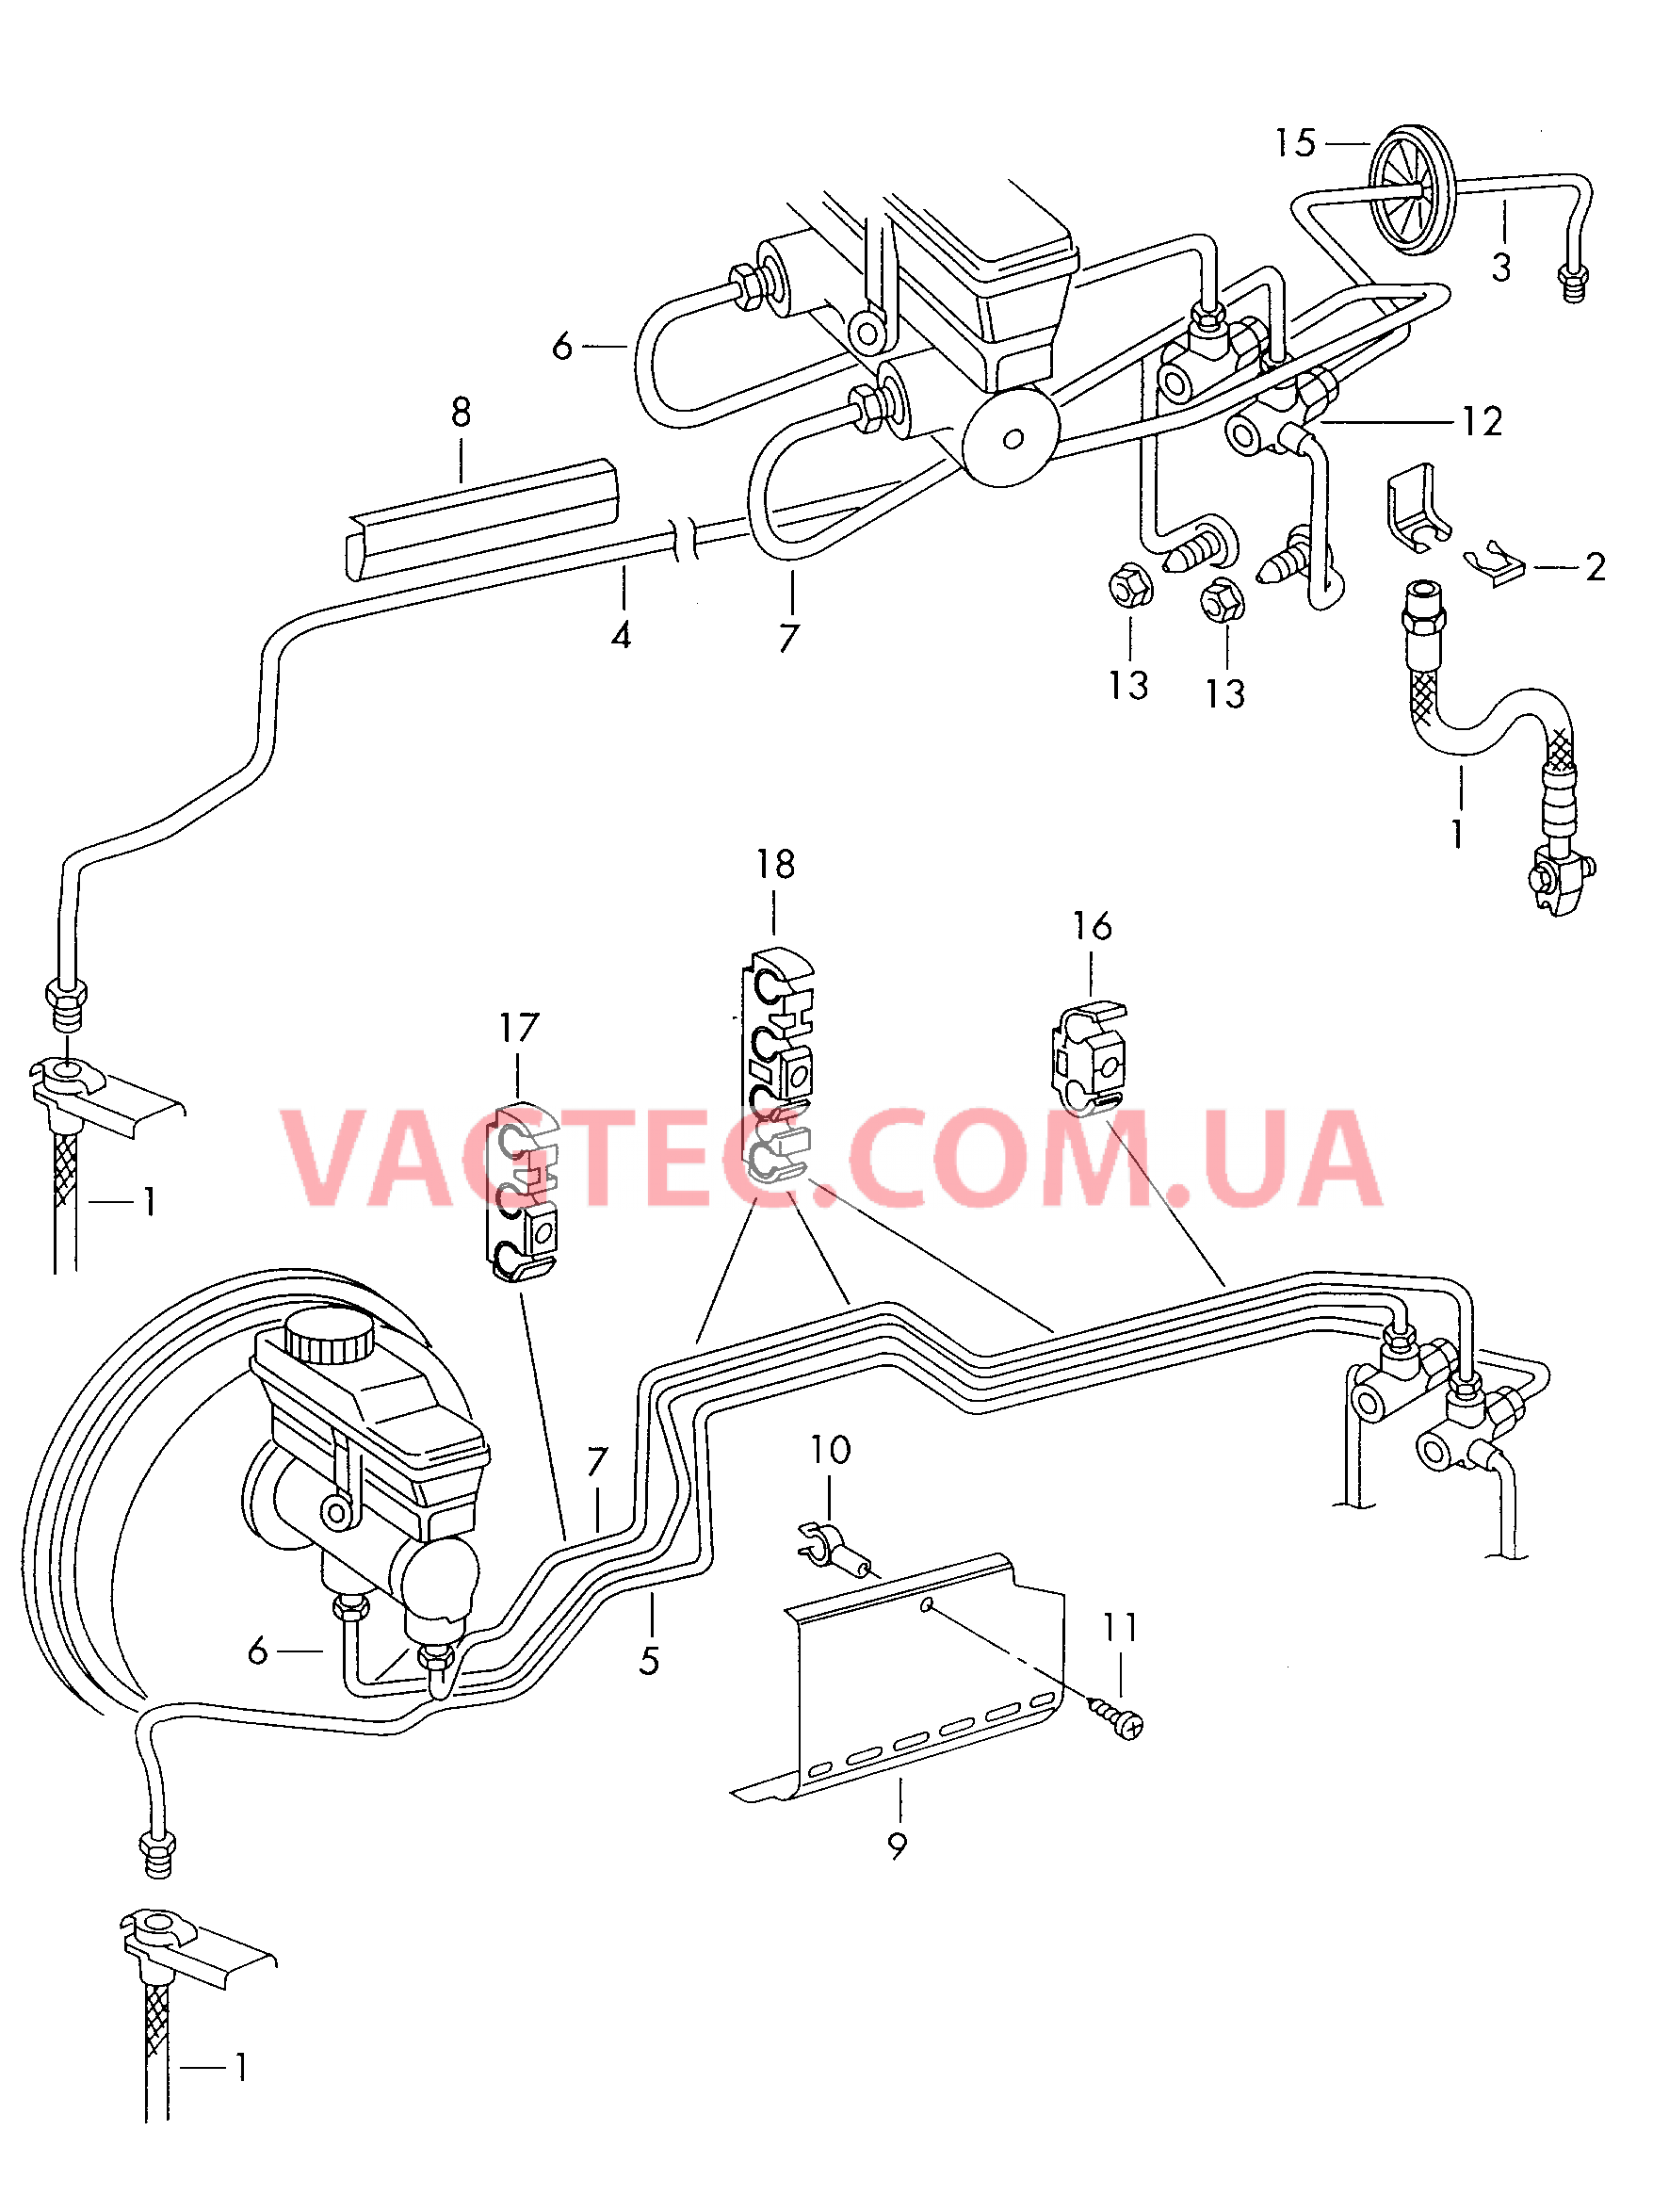 Тормозная трубка для автомобилей без антиблокировочной системы SKODA OCTAVIA   для SKODA Octavia 2000